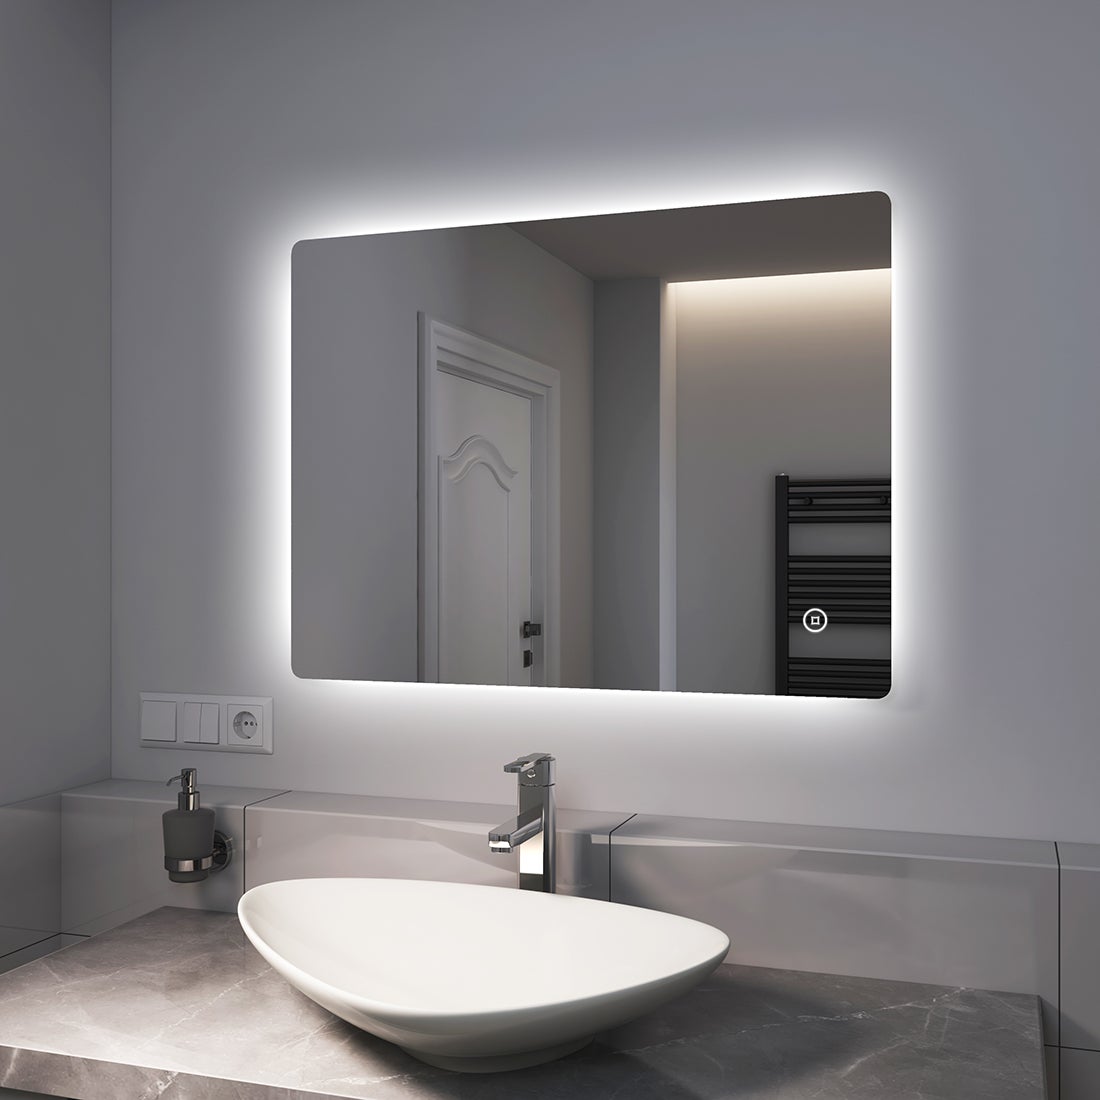 EMKE Badspiegel LED 80x60cm, Kaltweißer Beleuchtung, Touch-schalter, Dimmbar